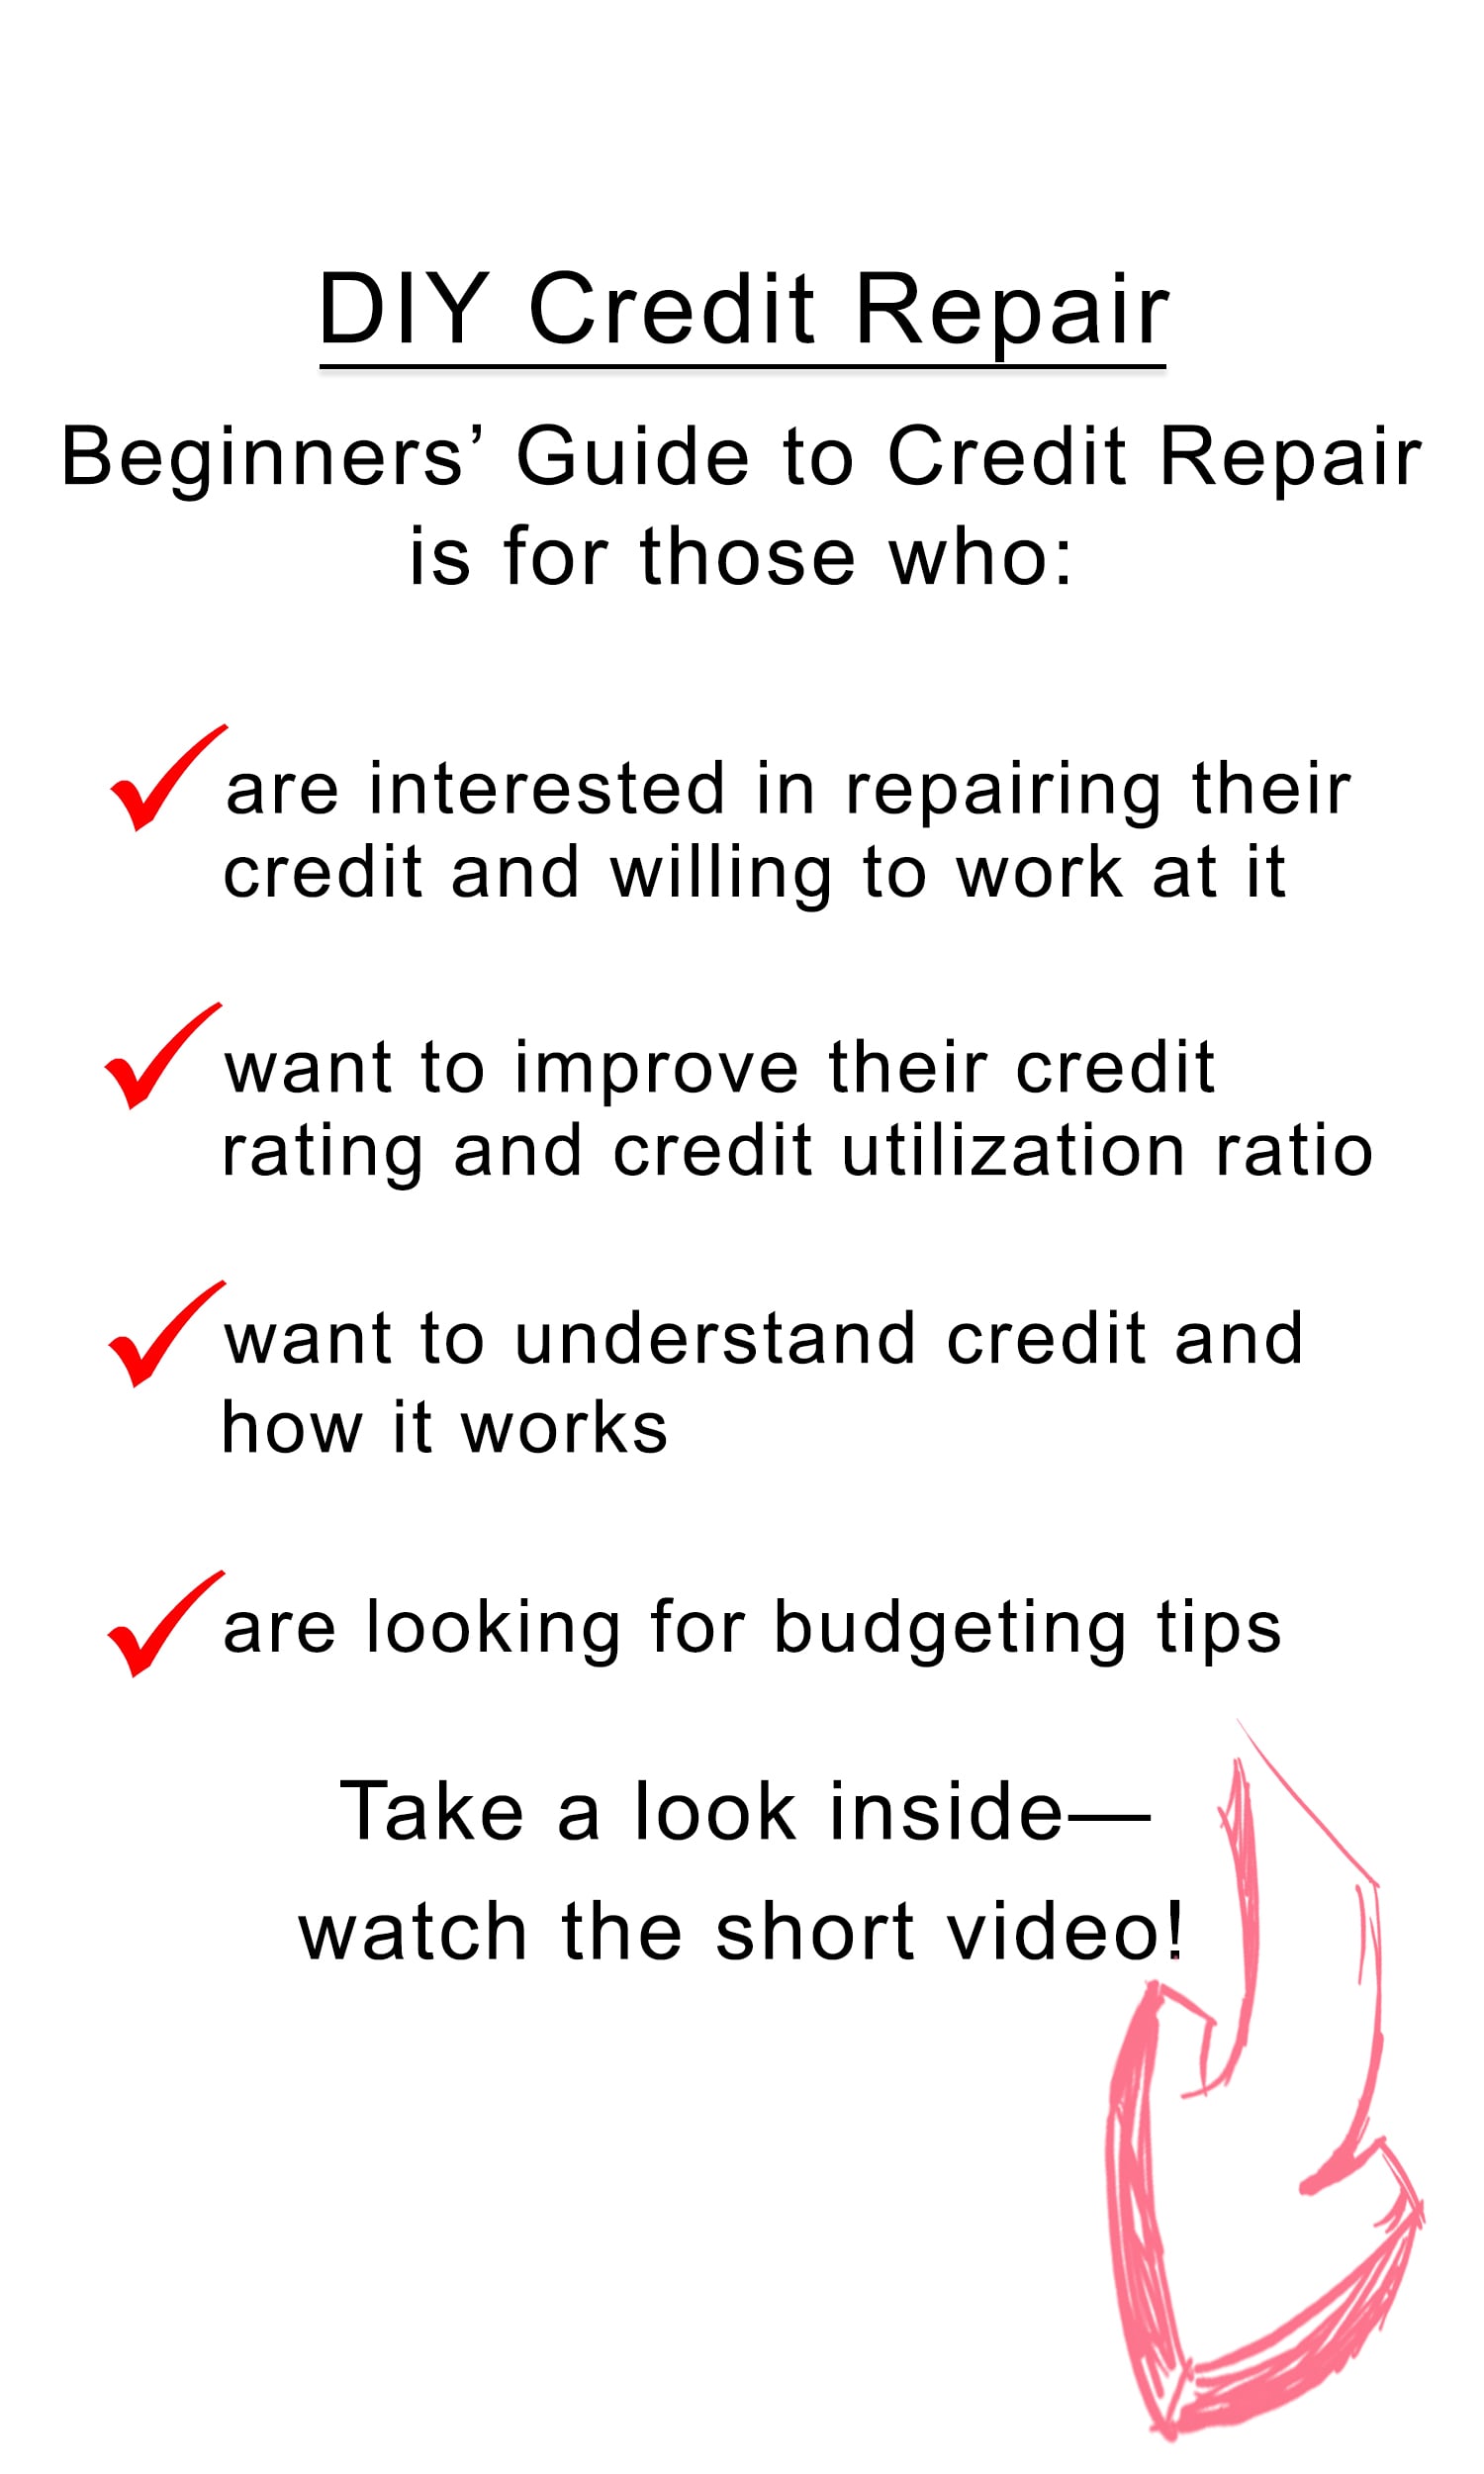 DIY Credit Repair Description